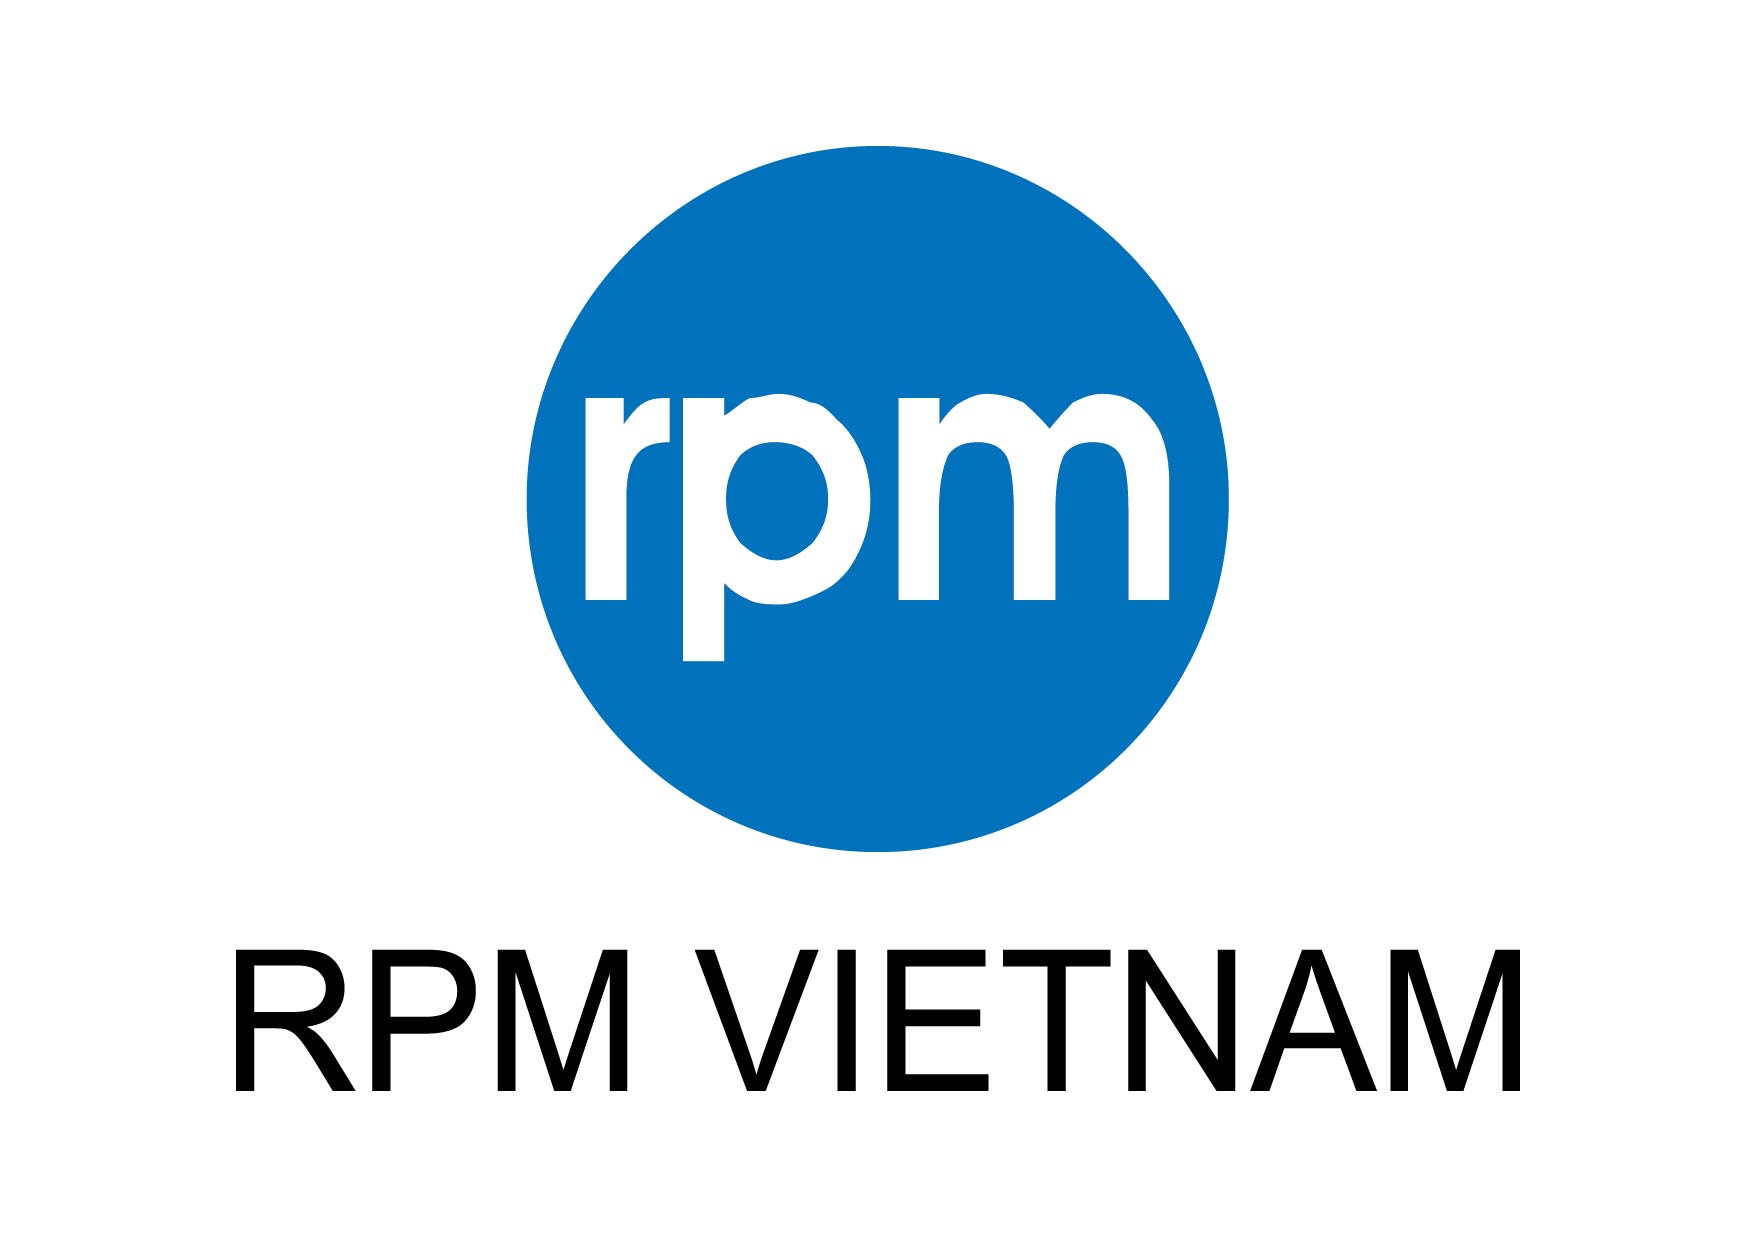 RPM VIETNAM